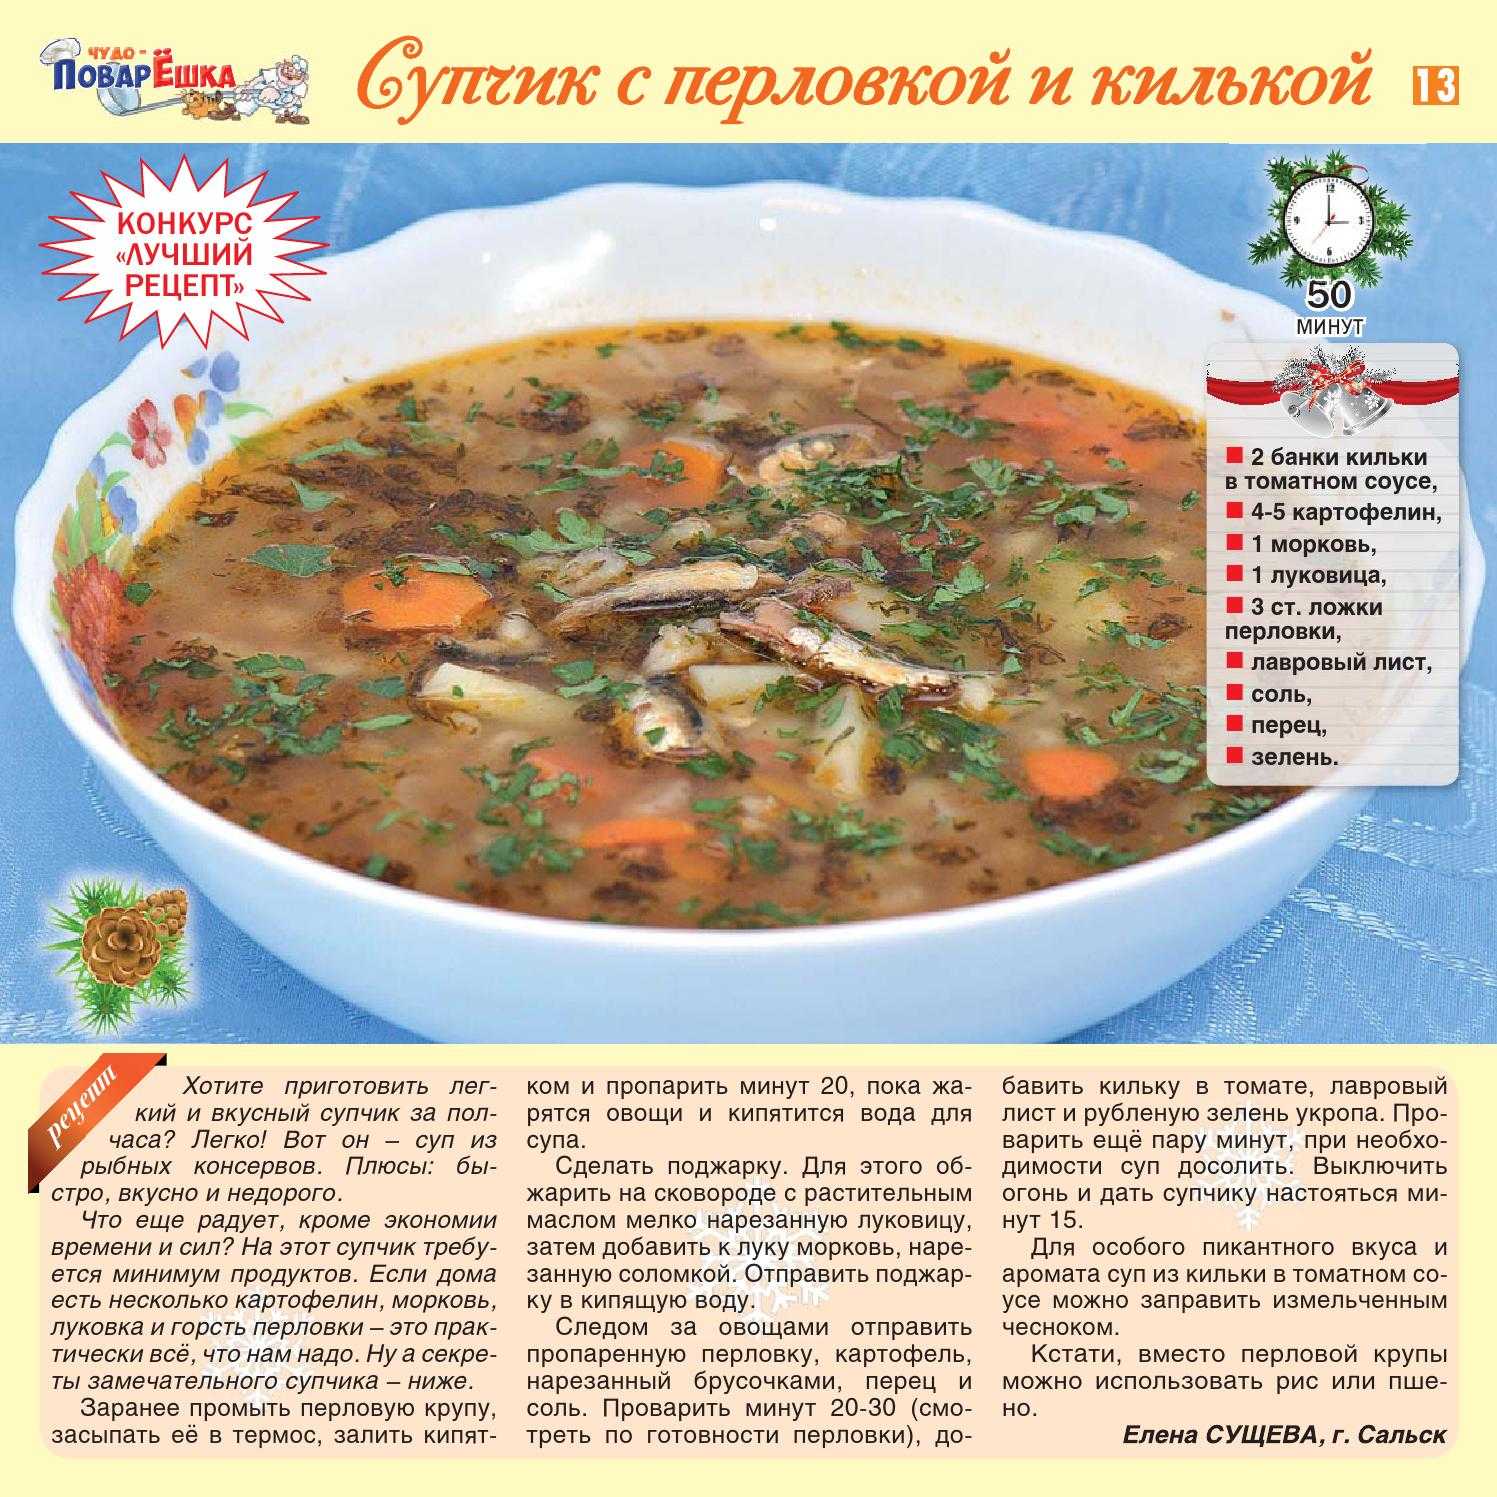 Суп из консервы рыбной в томате. Суп из кильки в томатном соусе рецепт. Суп из консервы килька в томате. Суп с консервой килька. Суп с килькой в томатном соусе рецепт.